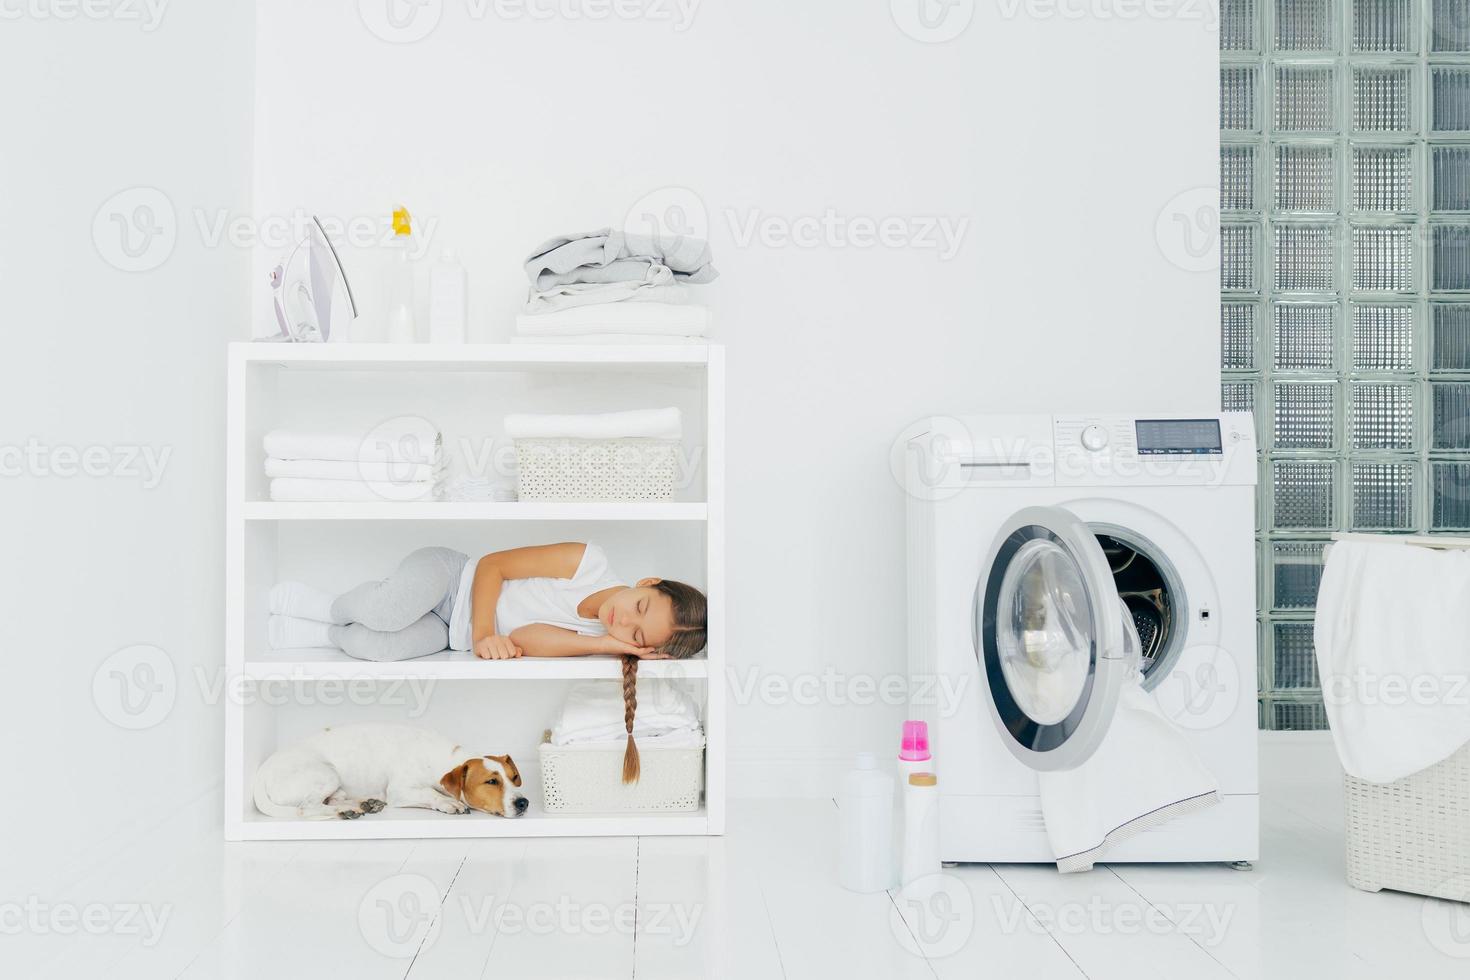 mysigt tvättrum med tvättmaskin, sovande tjej med hund på hyllan, flaskor med flytande pulver på golvet, korg full med smutstvätt. barnet får vila efter att ha hjälpt mamma att tvätta kläder. inhemsk atmosfär foto